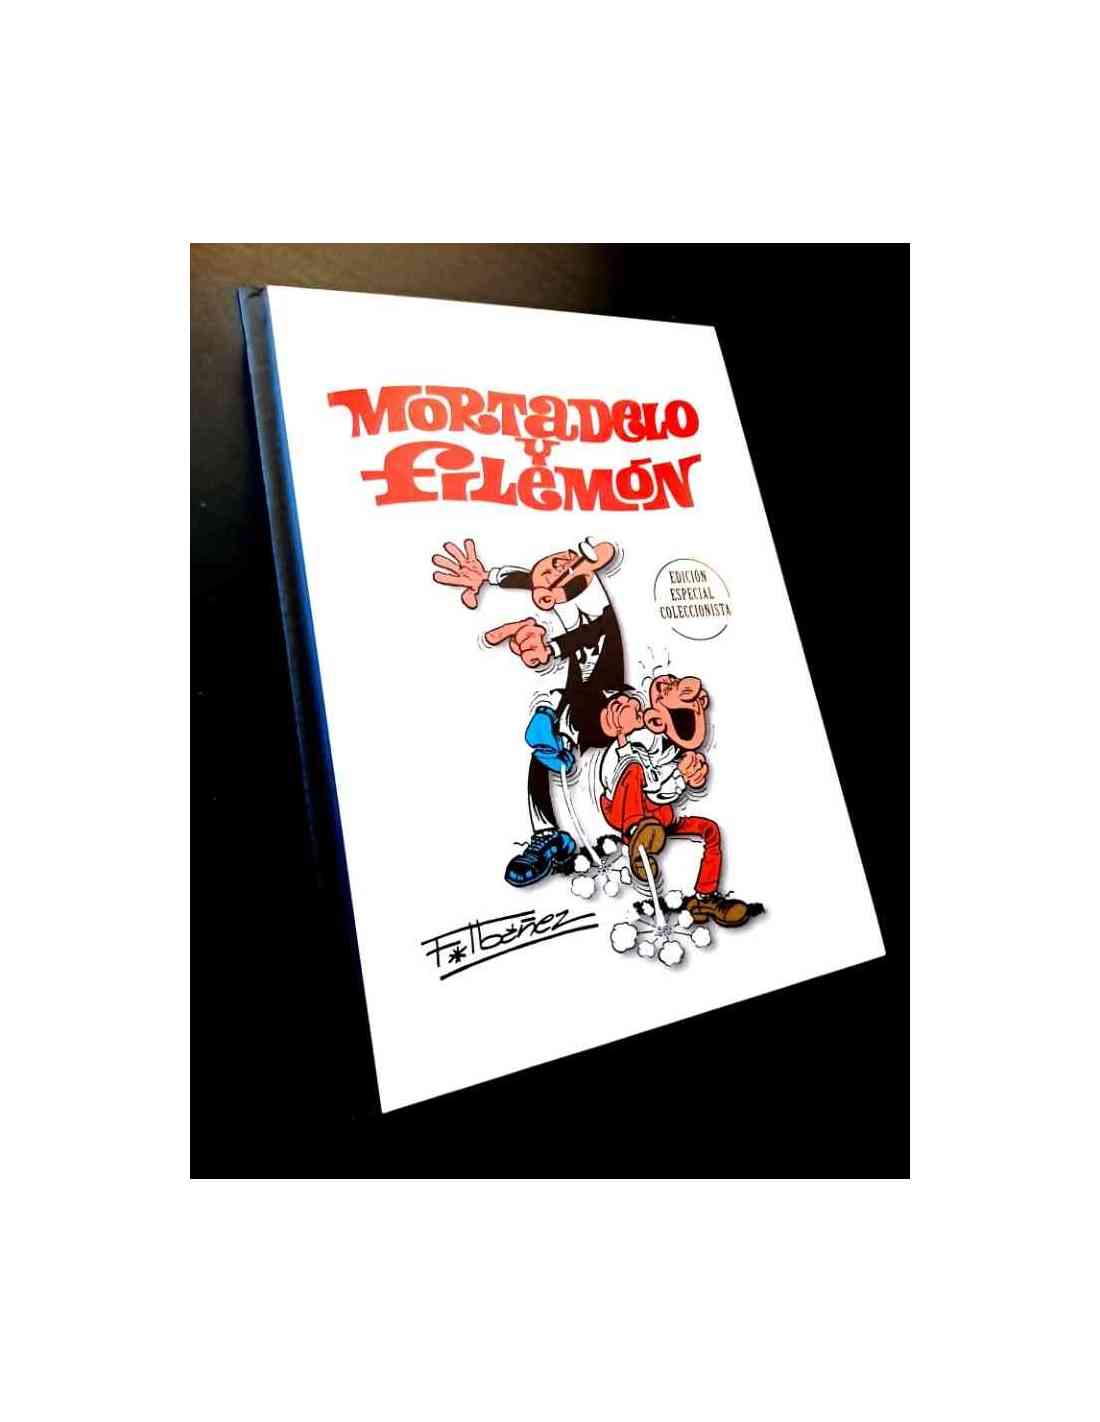 Mortadelo y Filemón 1. Clásicos del humor. Edición coleccionista